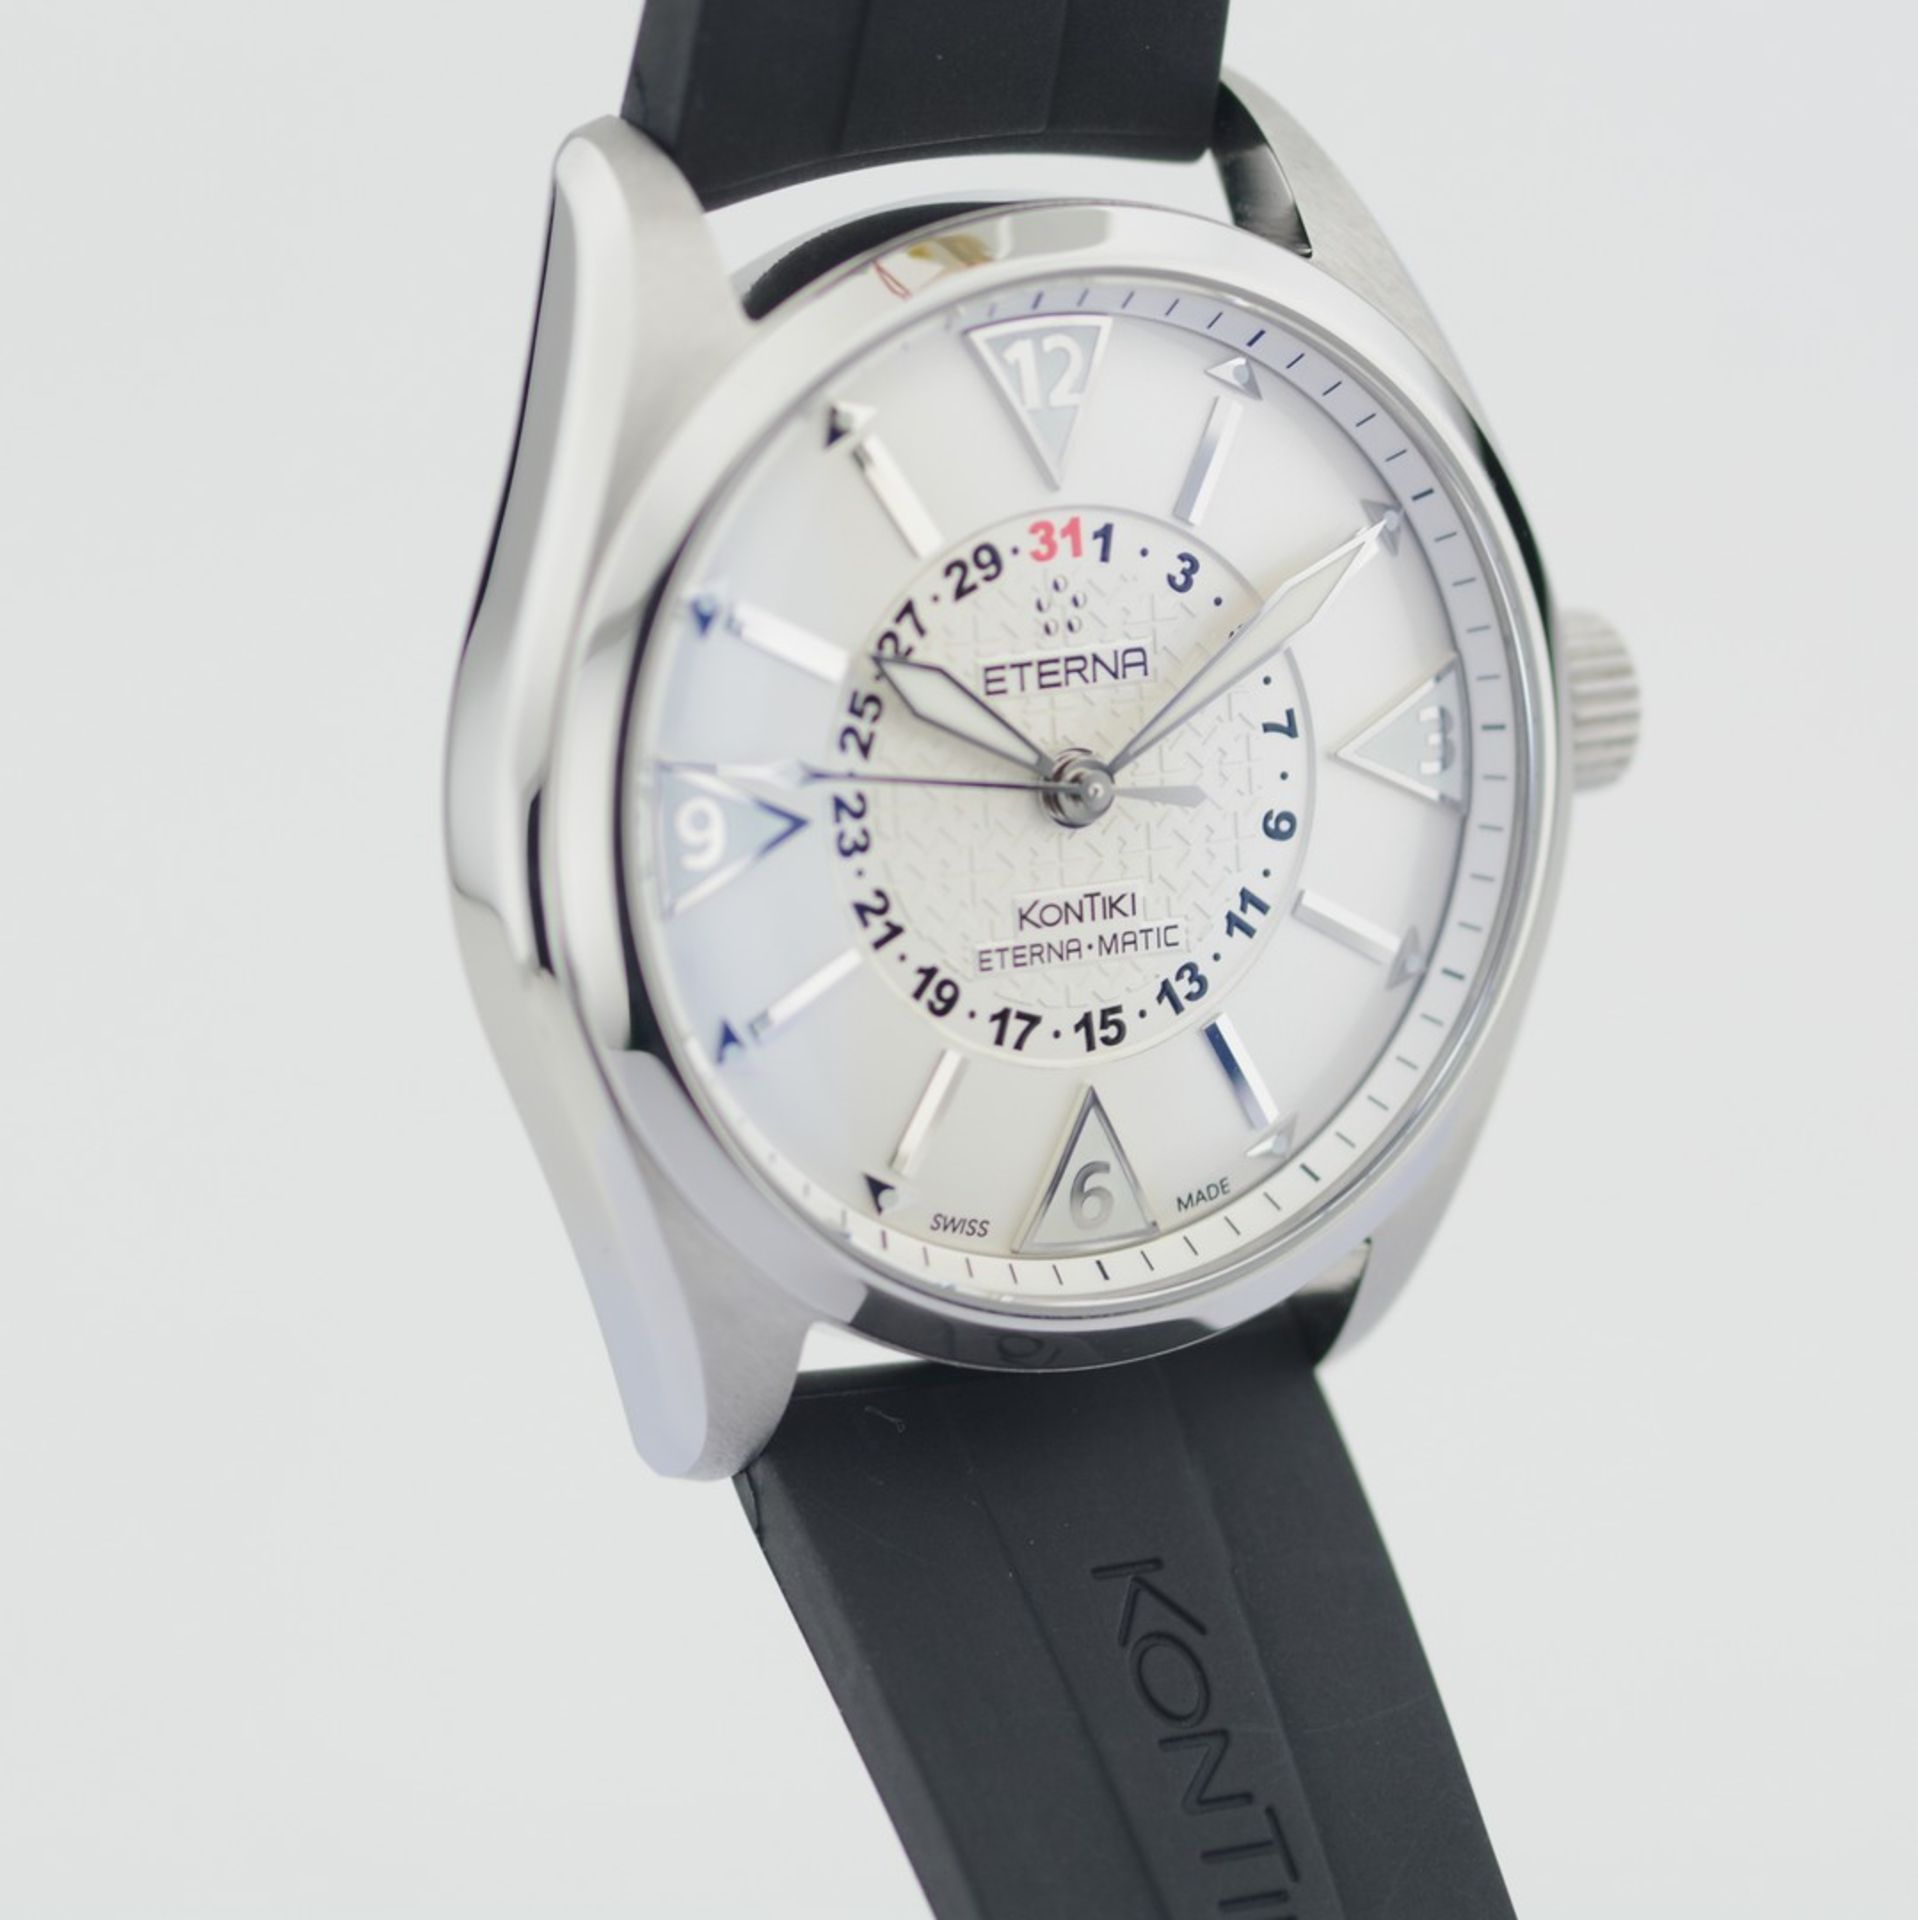 Eterna-Matic / Kontiki - Four Hands - Gentlemen's Steel Wristwatch - Image 3 of 8